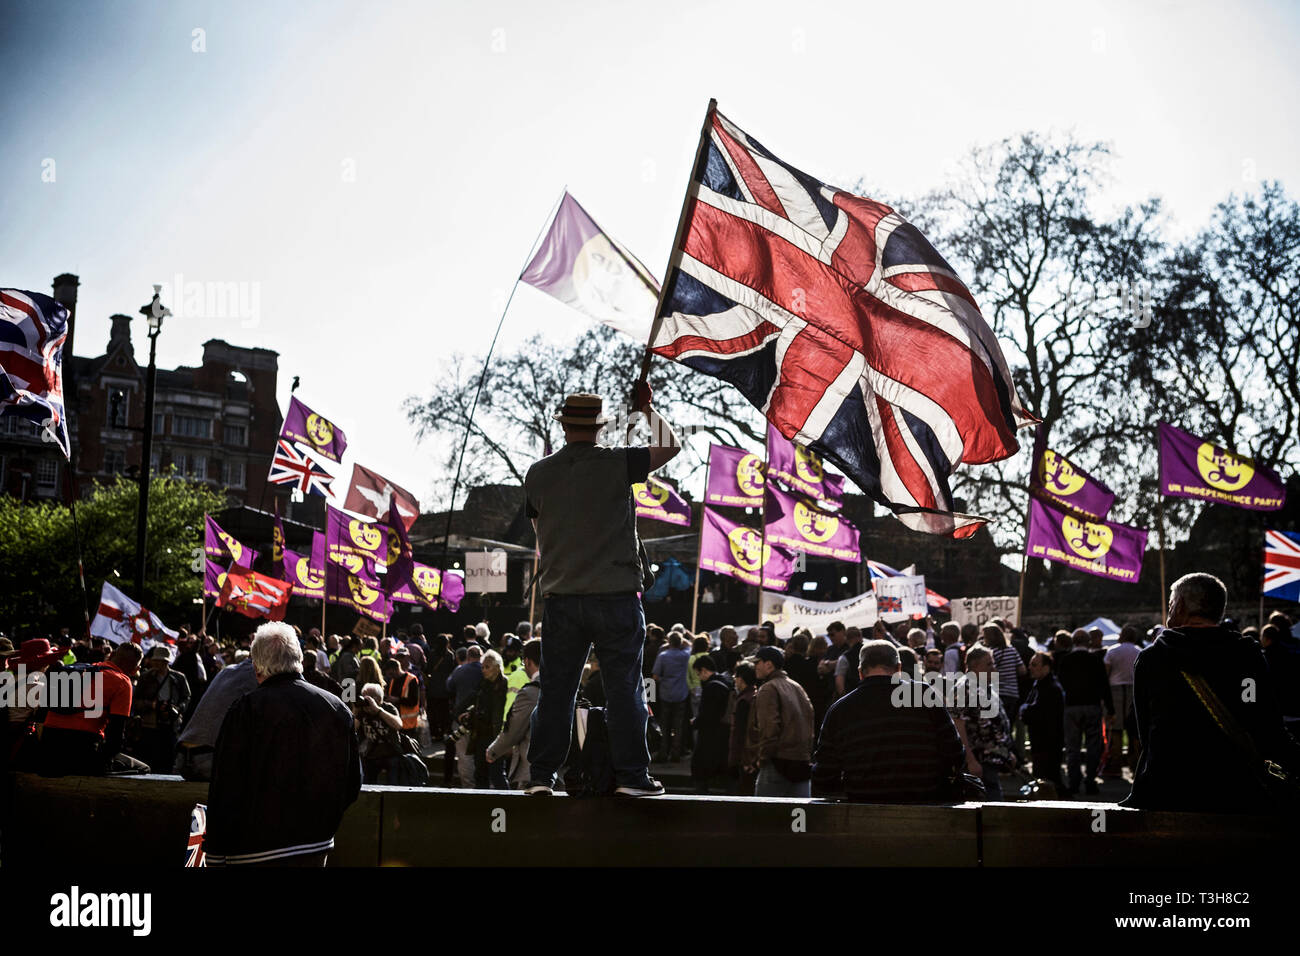 Rally político reino unido/ política reino unido/ protestador político que ostenta una bandera en una manifestación pacífica a favor del Brexit en 2019. Britishness. Patriotismo. Foto de stock